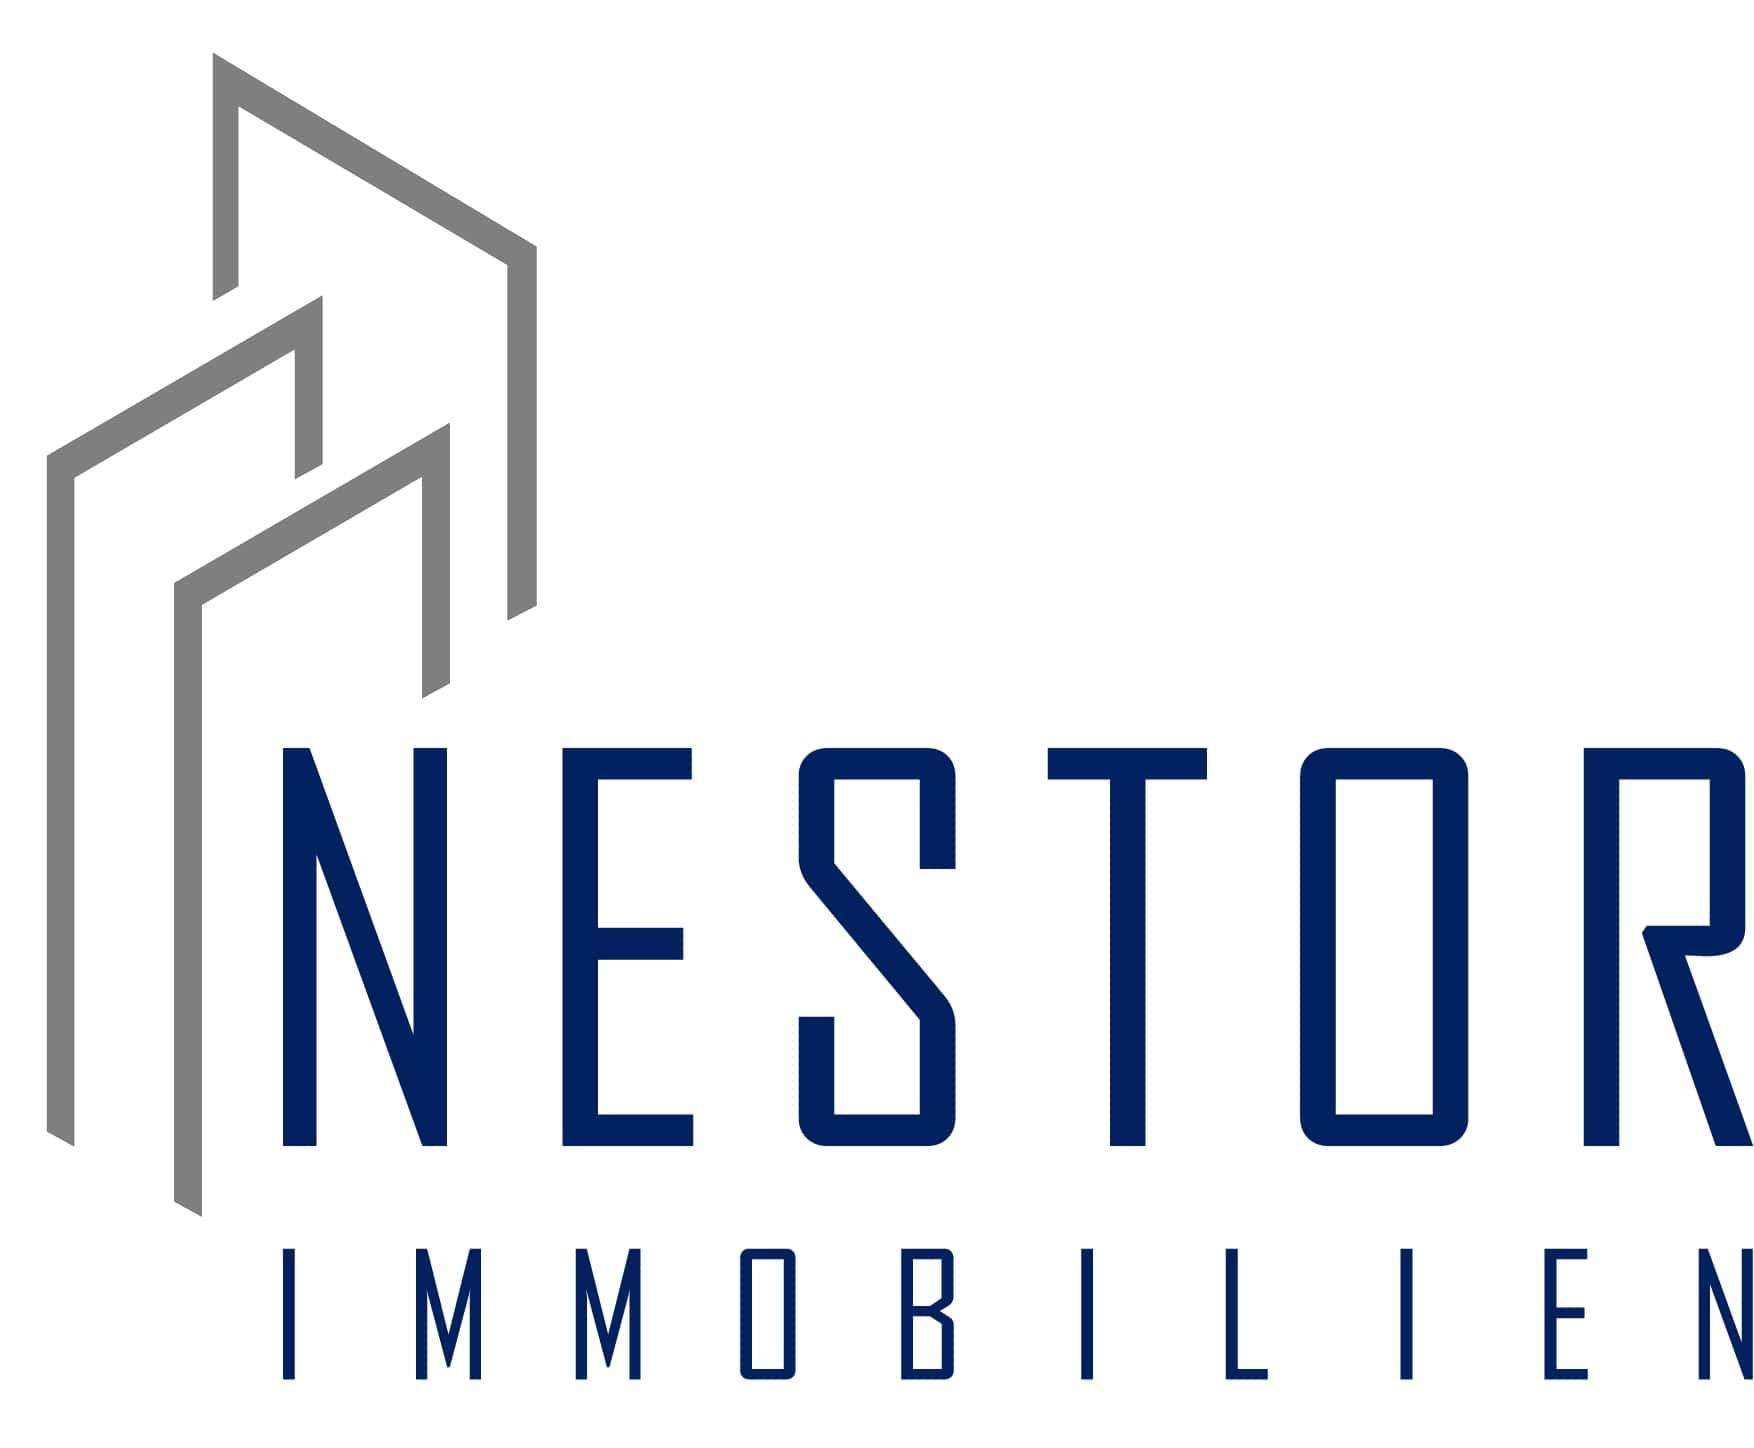 Makler NESTOR Immobilien GmbH & Co KG logo